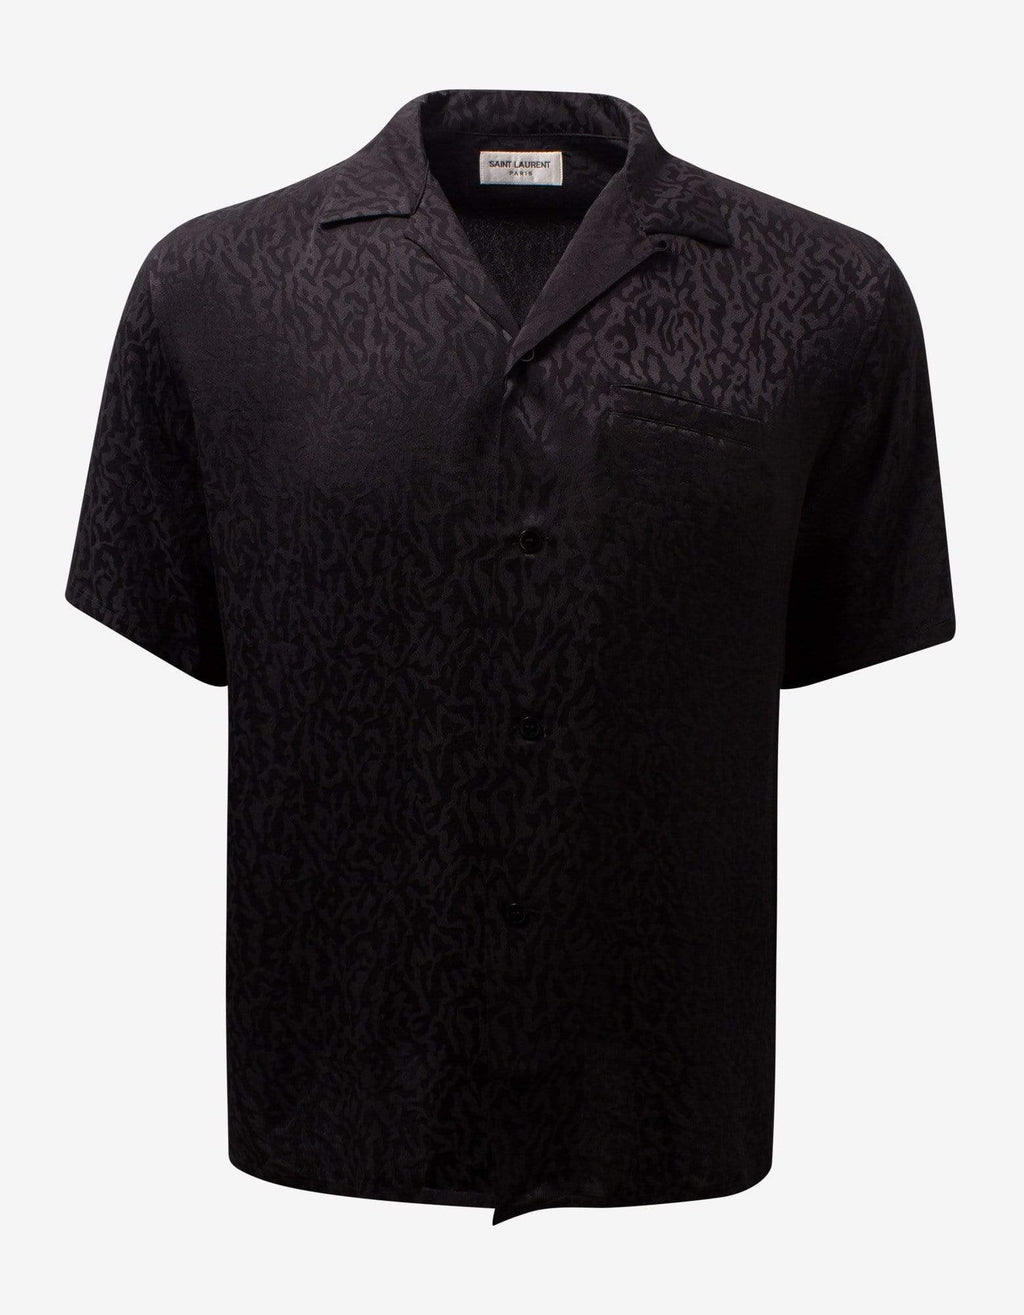 Saint Laurent Saint Laurent Black Camo Jacquard Silk Shirt